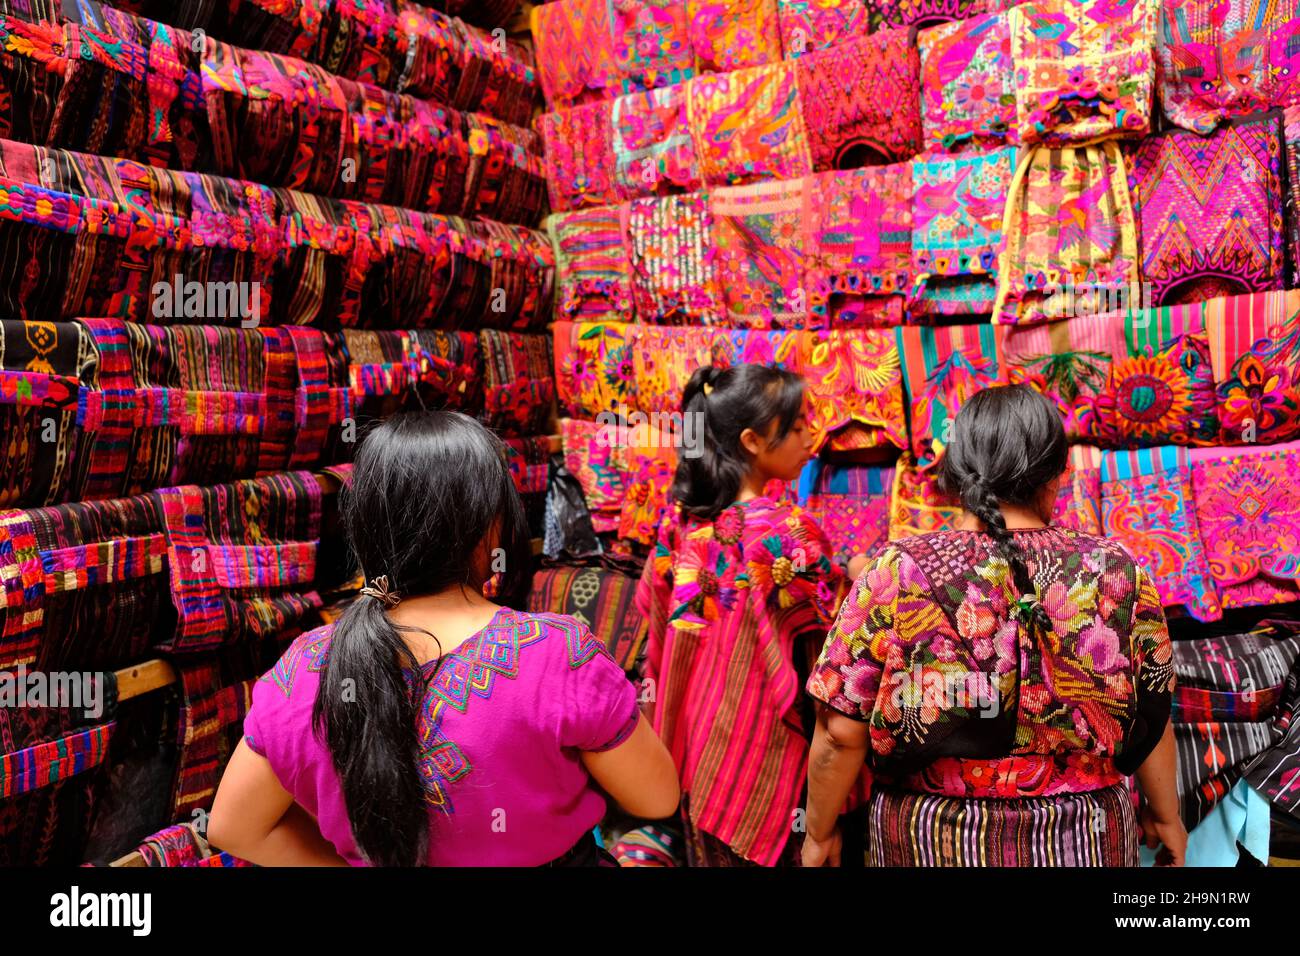 Guatemala Chichicastenango Plaza y Mercado - Guatemaltekisches Geschäft für traditionelle Damenbekleidung Stockfoto